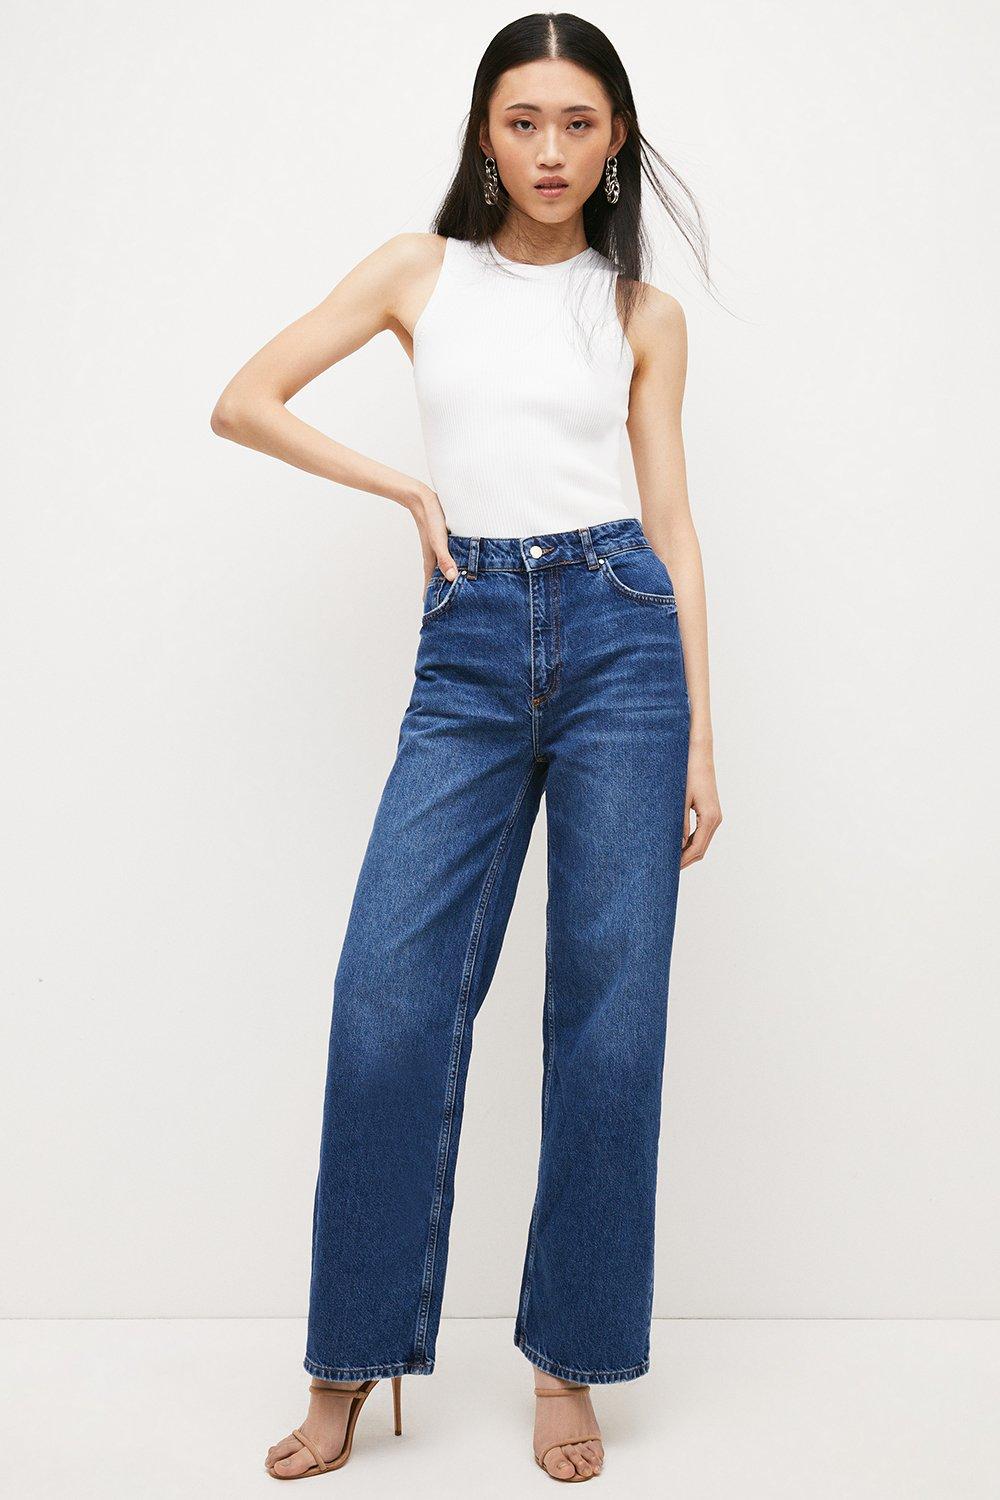 Karen Millen Tailored Mid Rise Slim Leg Contour Jeans - ShopStyle